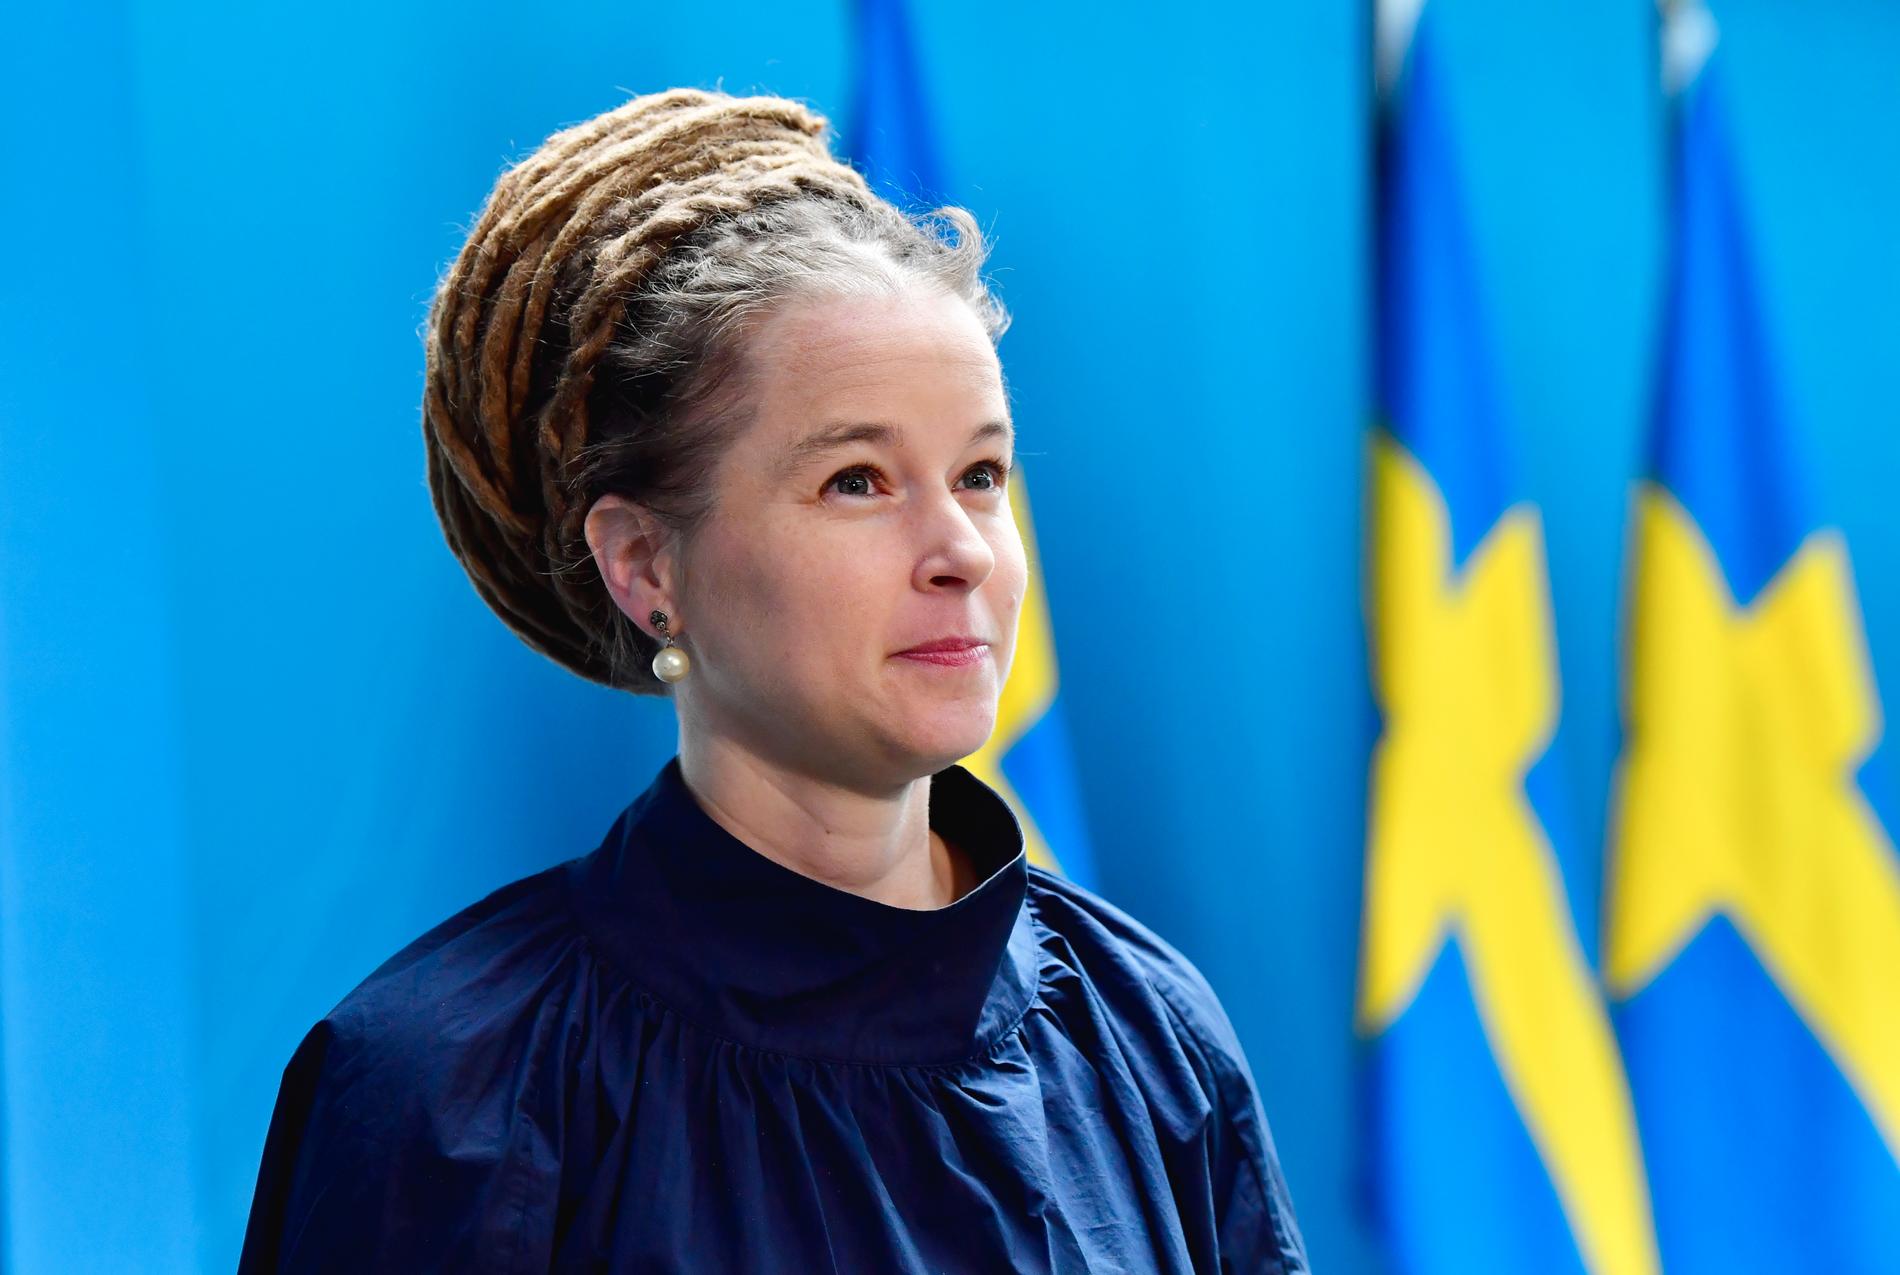 Kultur- och ungdomsminister Amanda Lind (MP). Arkivbild.